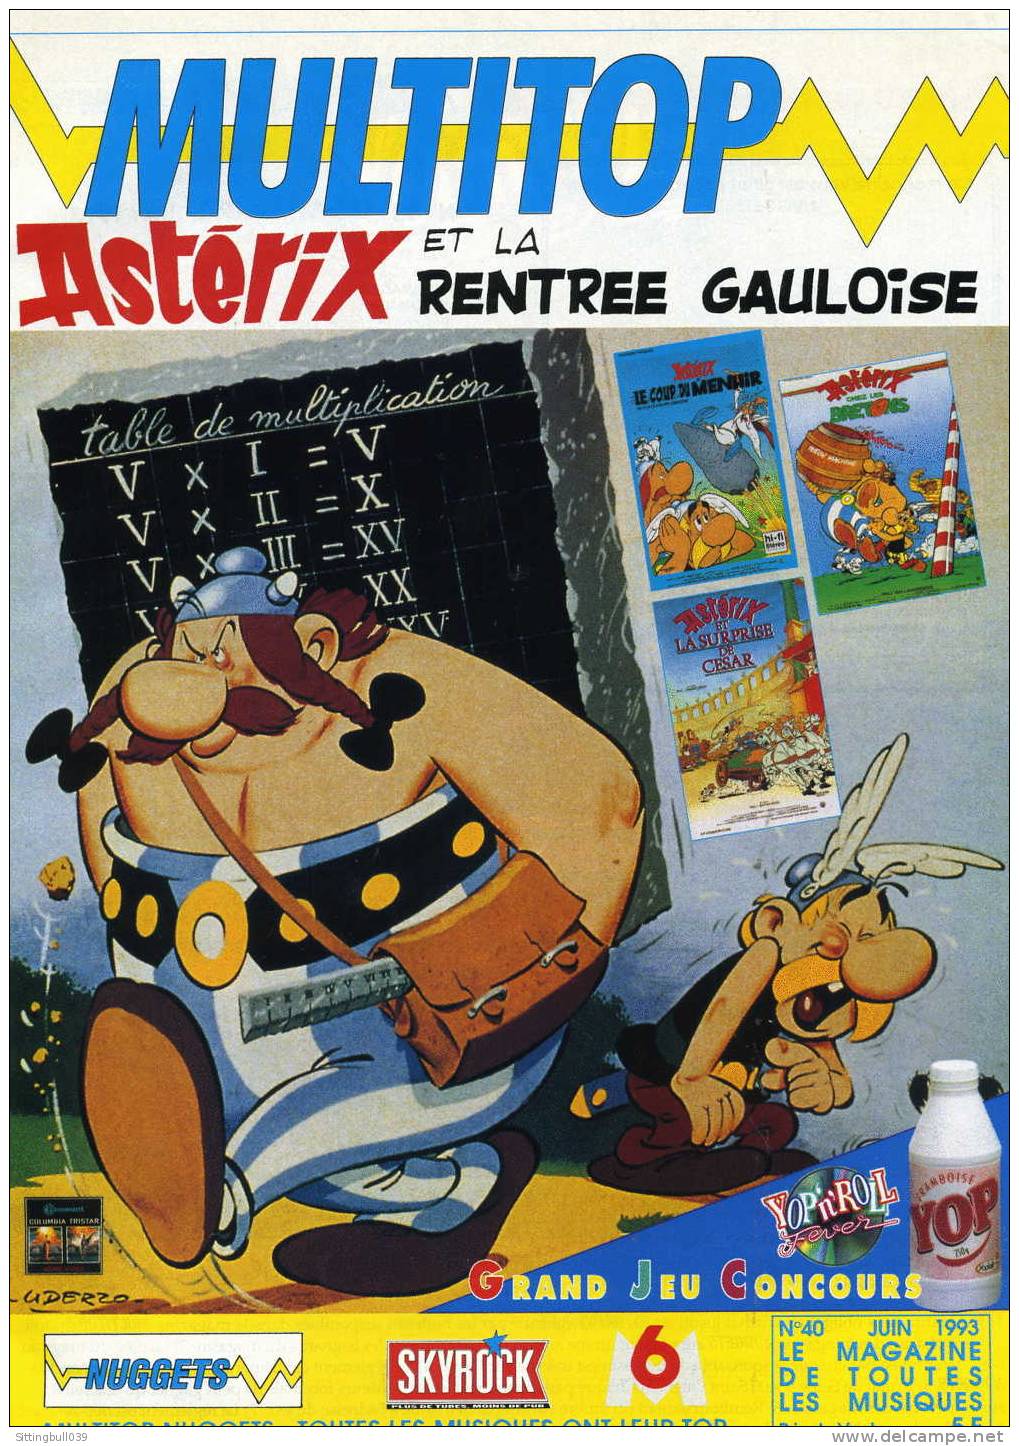 ASTERIX ET LA RENTREE GAULOISE DANS LE MAGAZINE MULTITOP N° 40. LE MAGAZINE DE TOUTES LES MUSIQUES. JUIN 1993. - Asterix